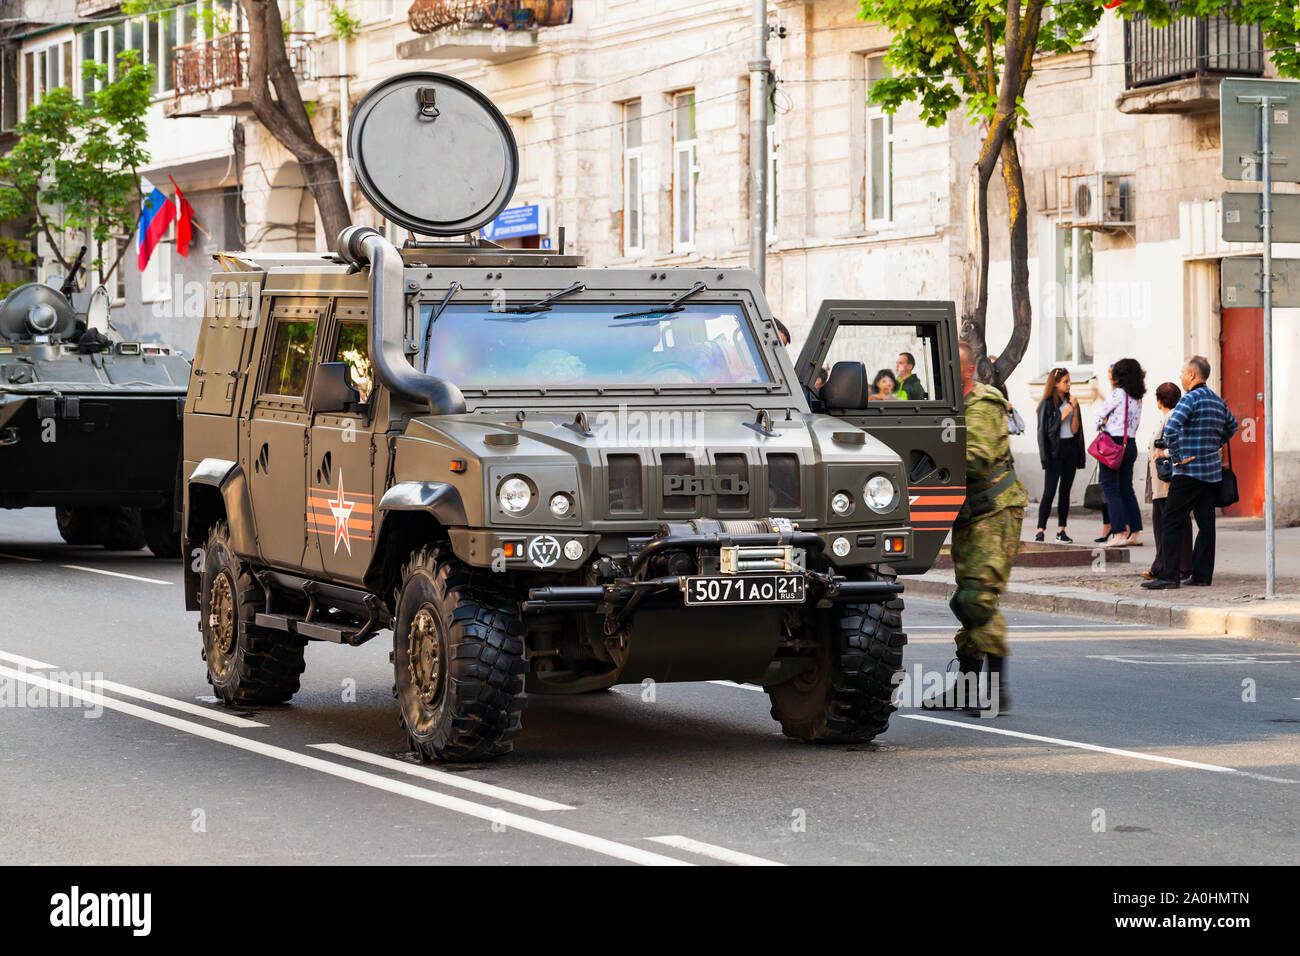 Sewastopol, Krim - Mai 5, 2018: Militärische Iveco LMV Auto steht auf der Straße. Dieses Light Multirole Vehicle ist ein 4 WD taktische Fahrzeug von Iveco entwickelt Stockfoto